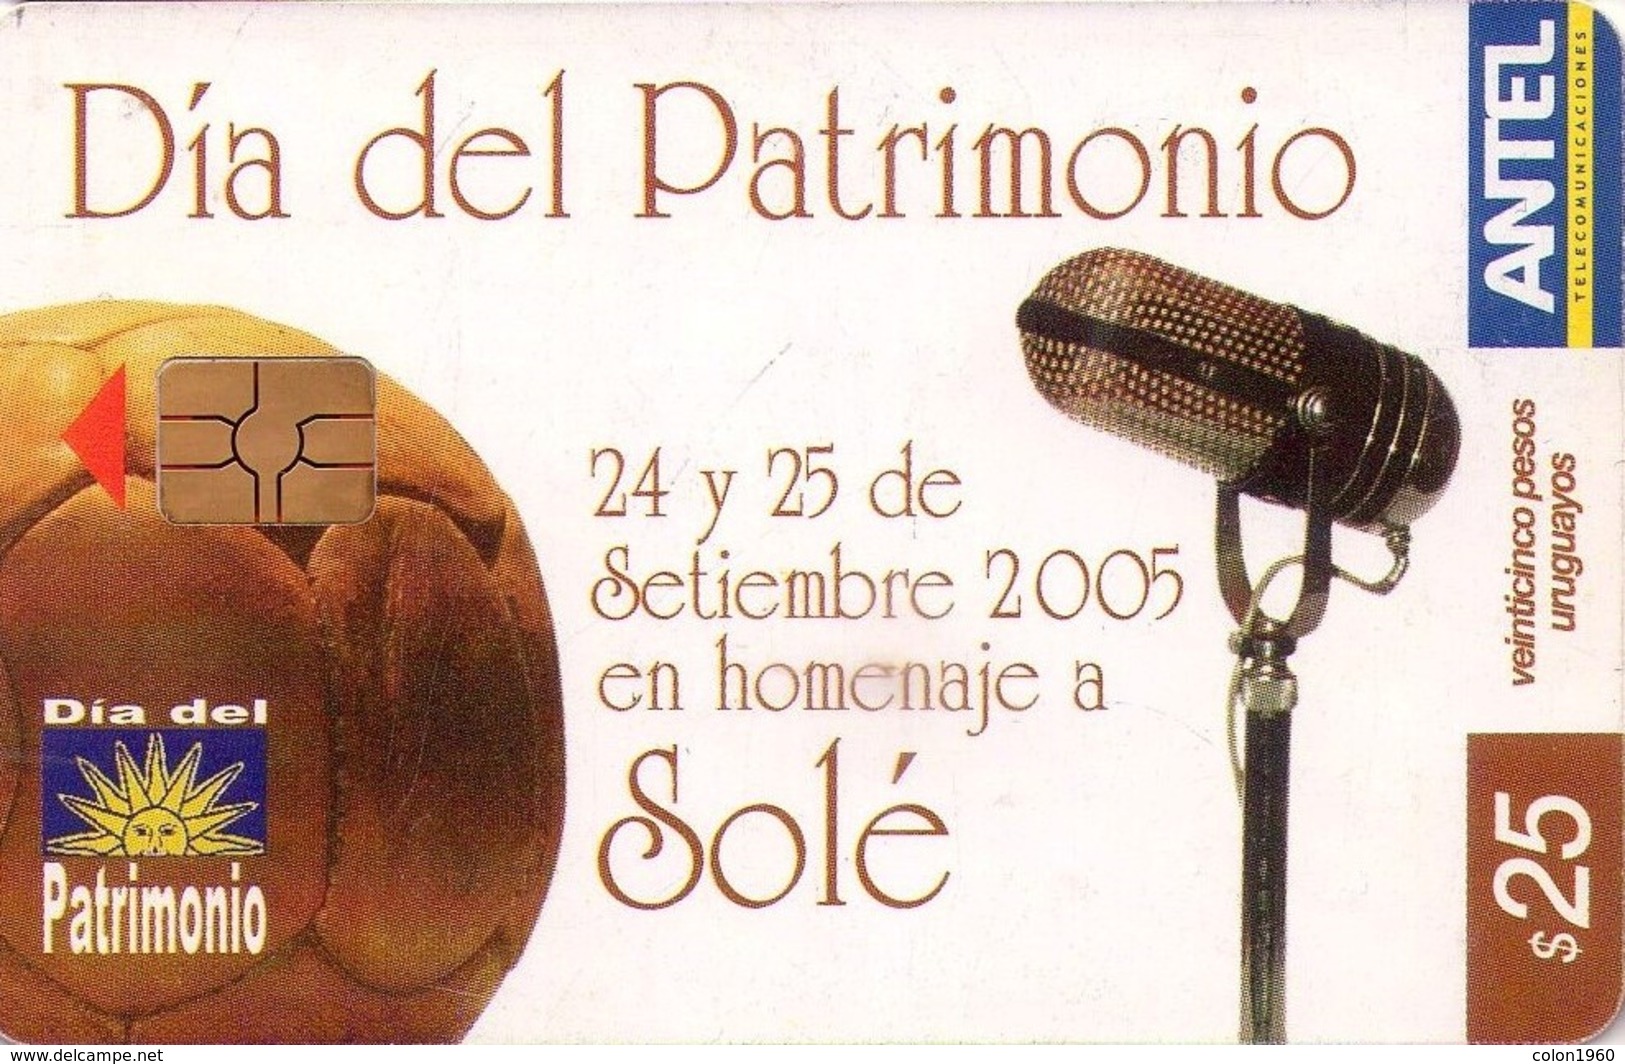 URUGUAY. 411a. DIA DEL PATRIMONIO - CARLOS SOLÉ. (205) - Uruguay